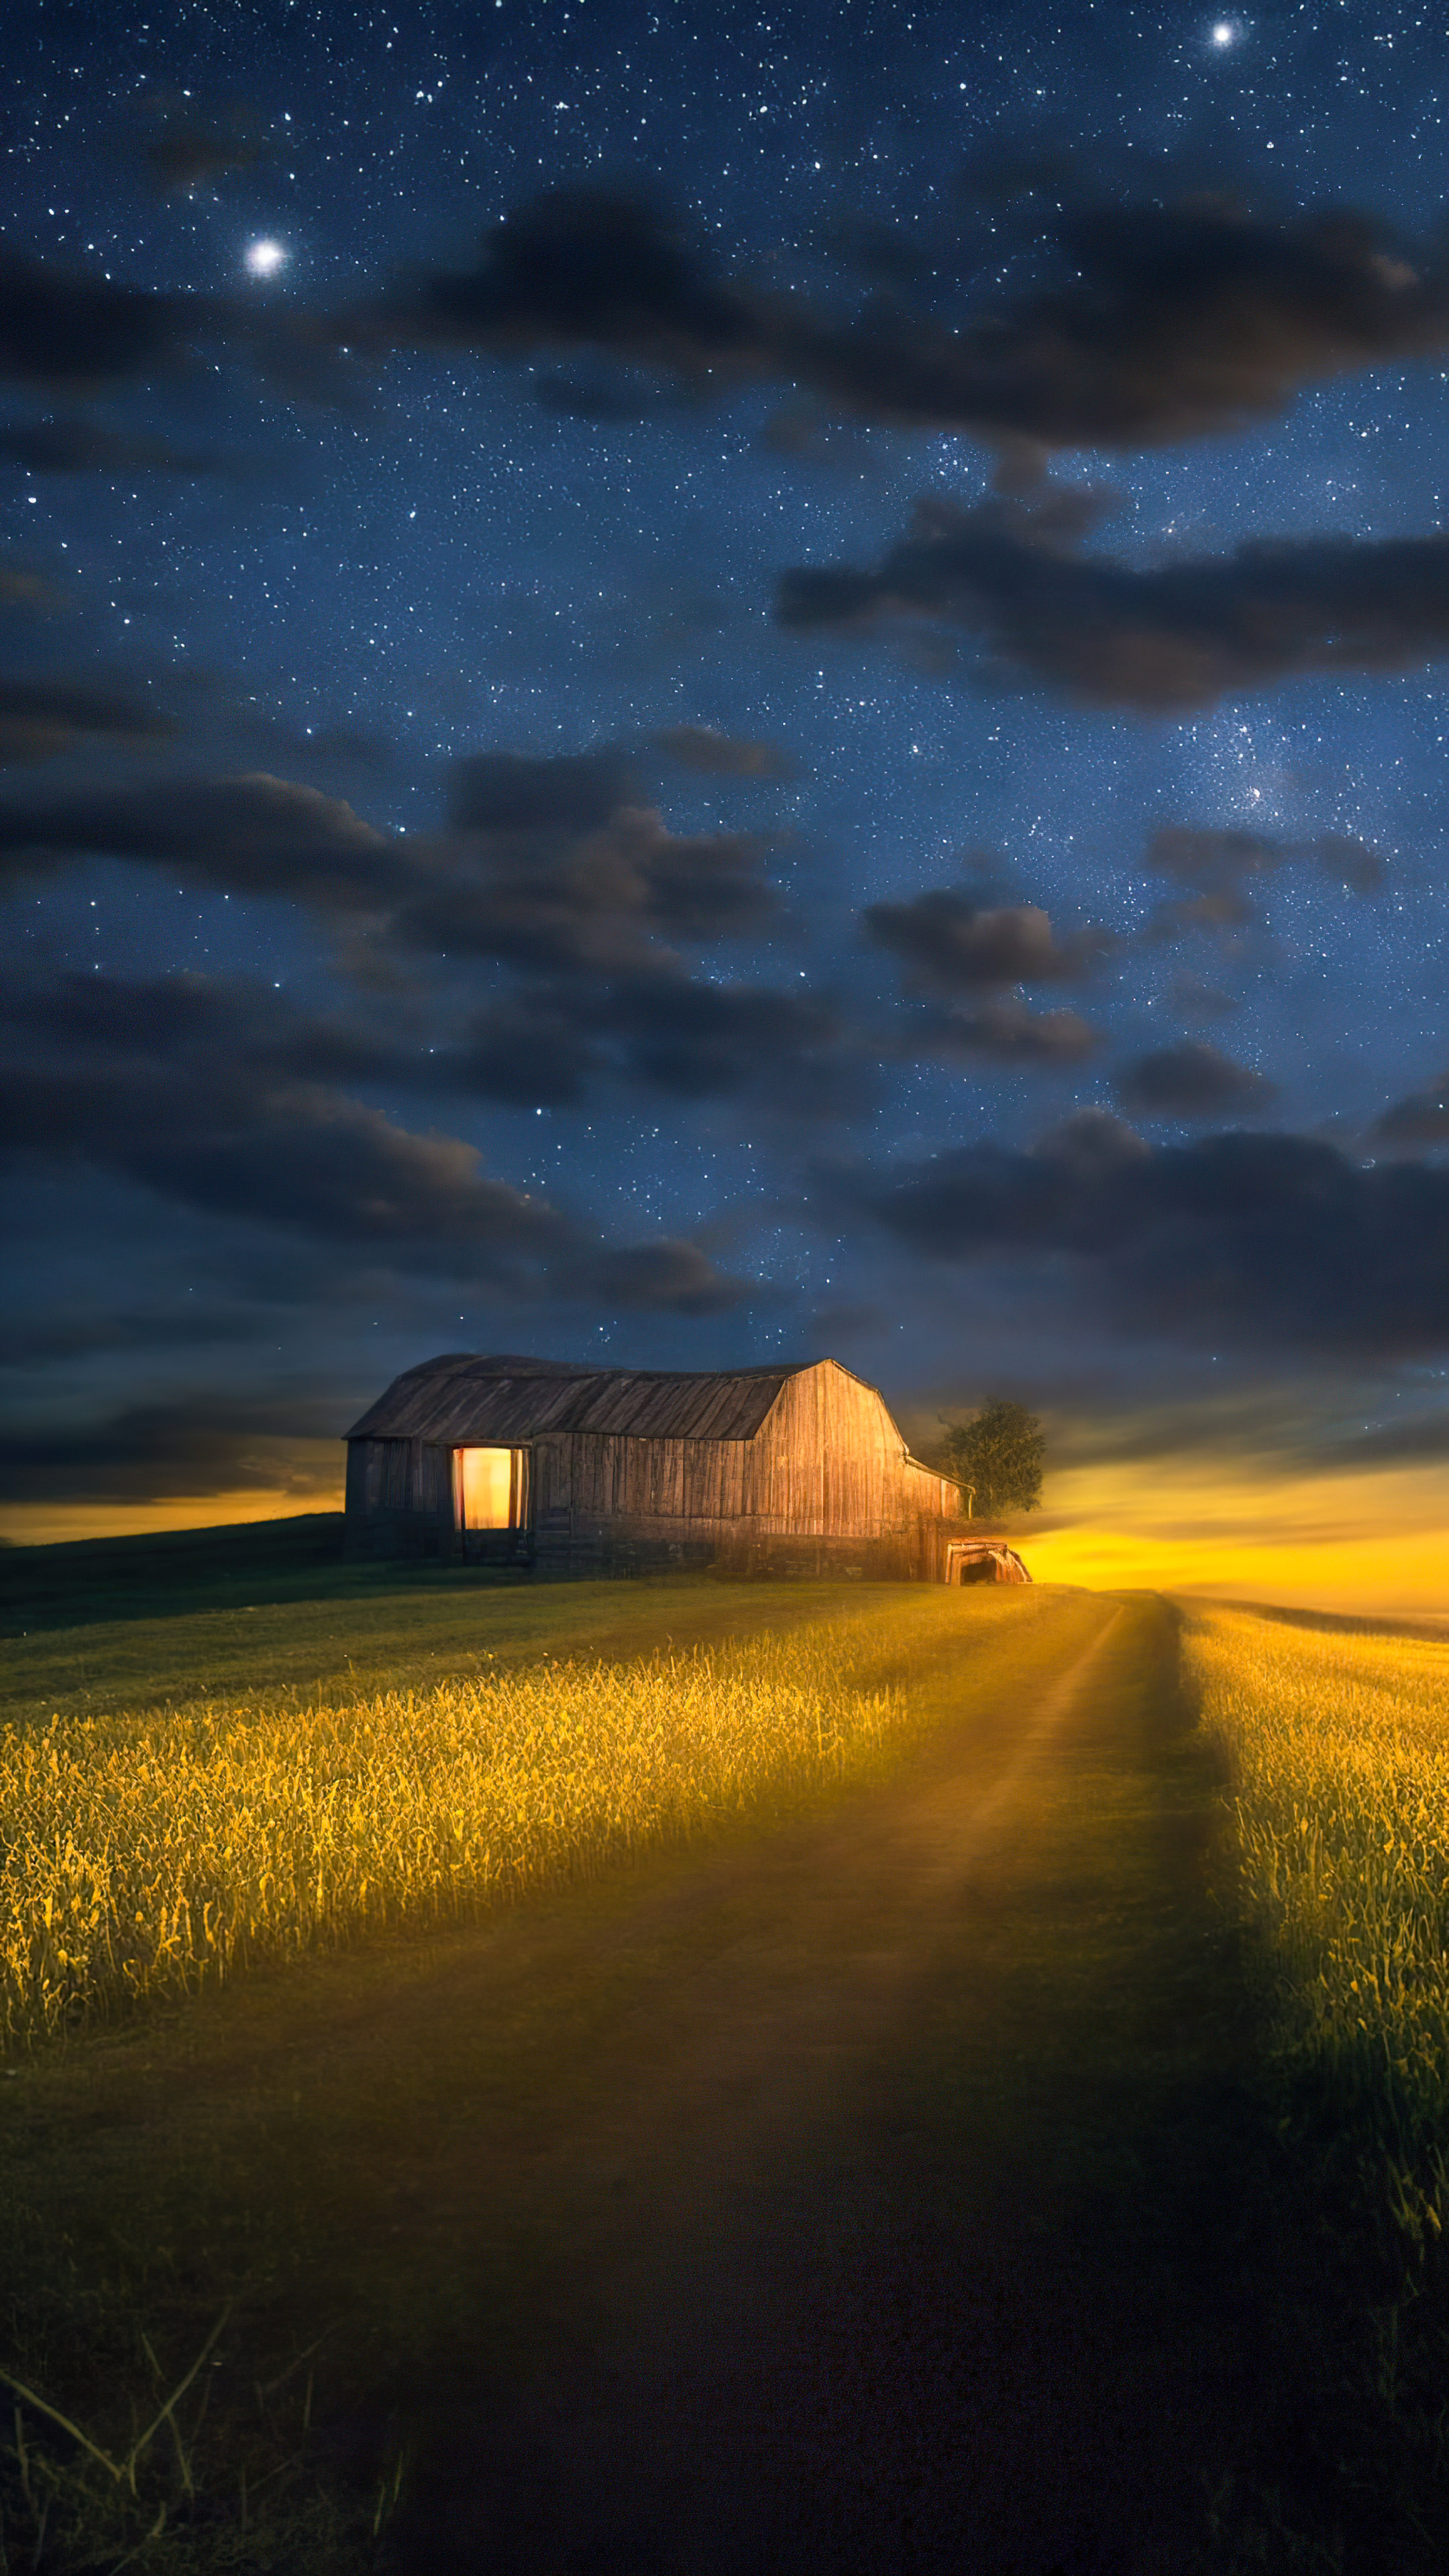 Le meilleur fond d'écran en 4K des paysages pour votre mobile vous attend, mettant en scène une scène sereine de la campagne, une grange rustique, des lucioles, et un ciel étoilé clair.